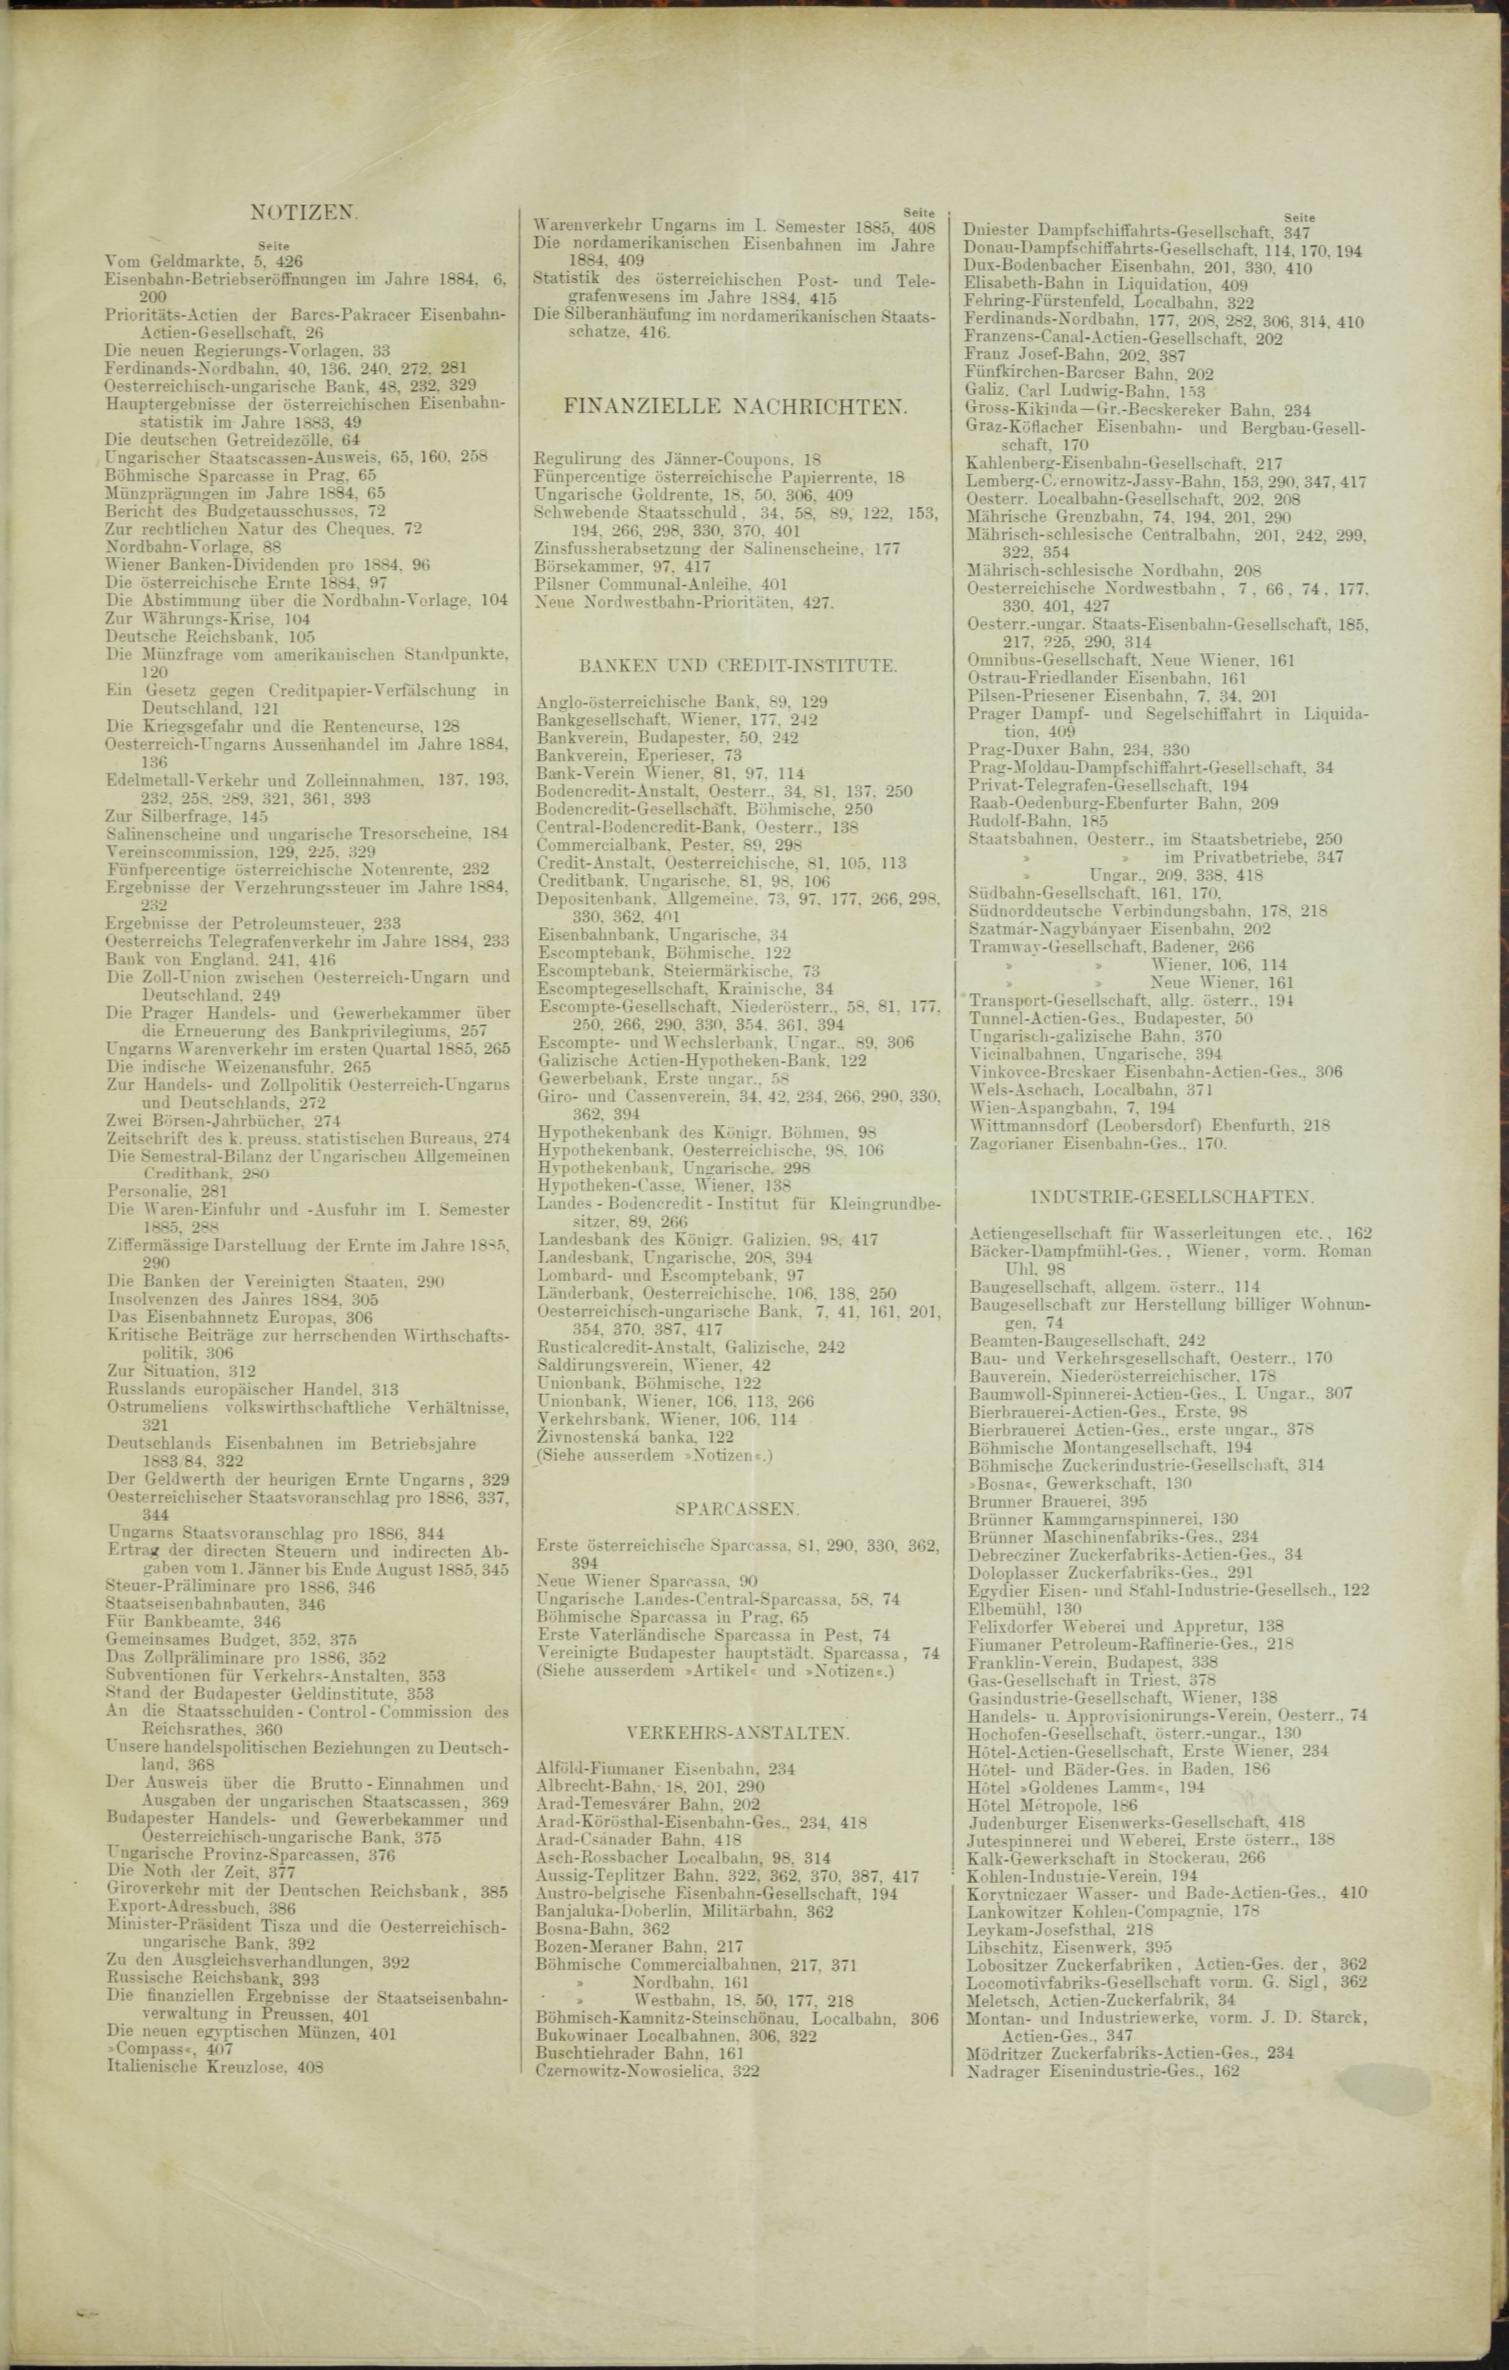 Der Tresor 03.09.1885 - Seite 11